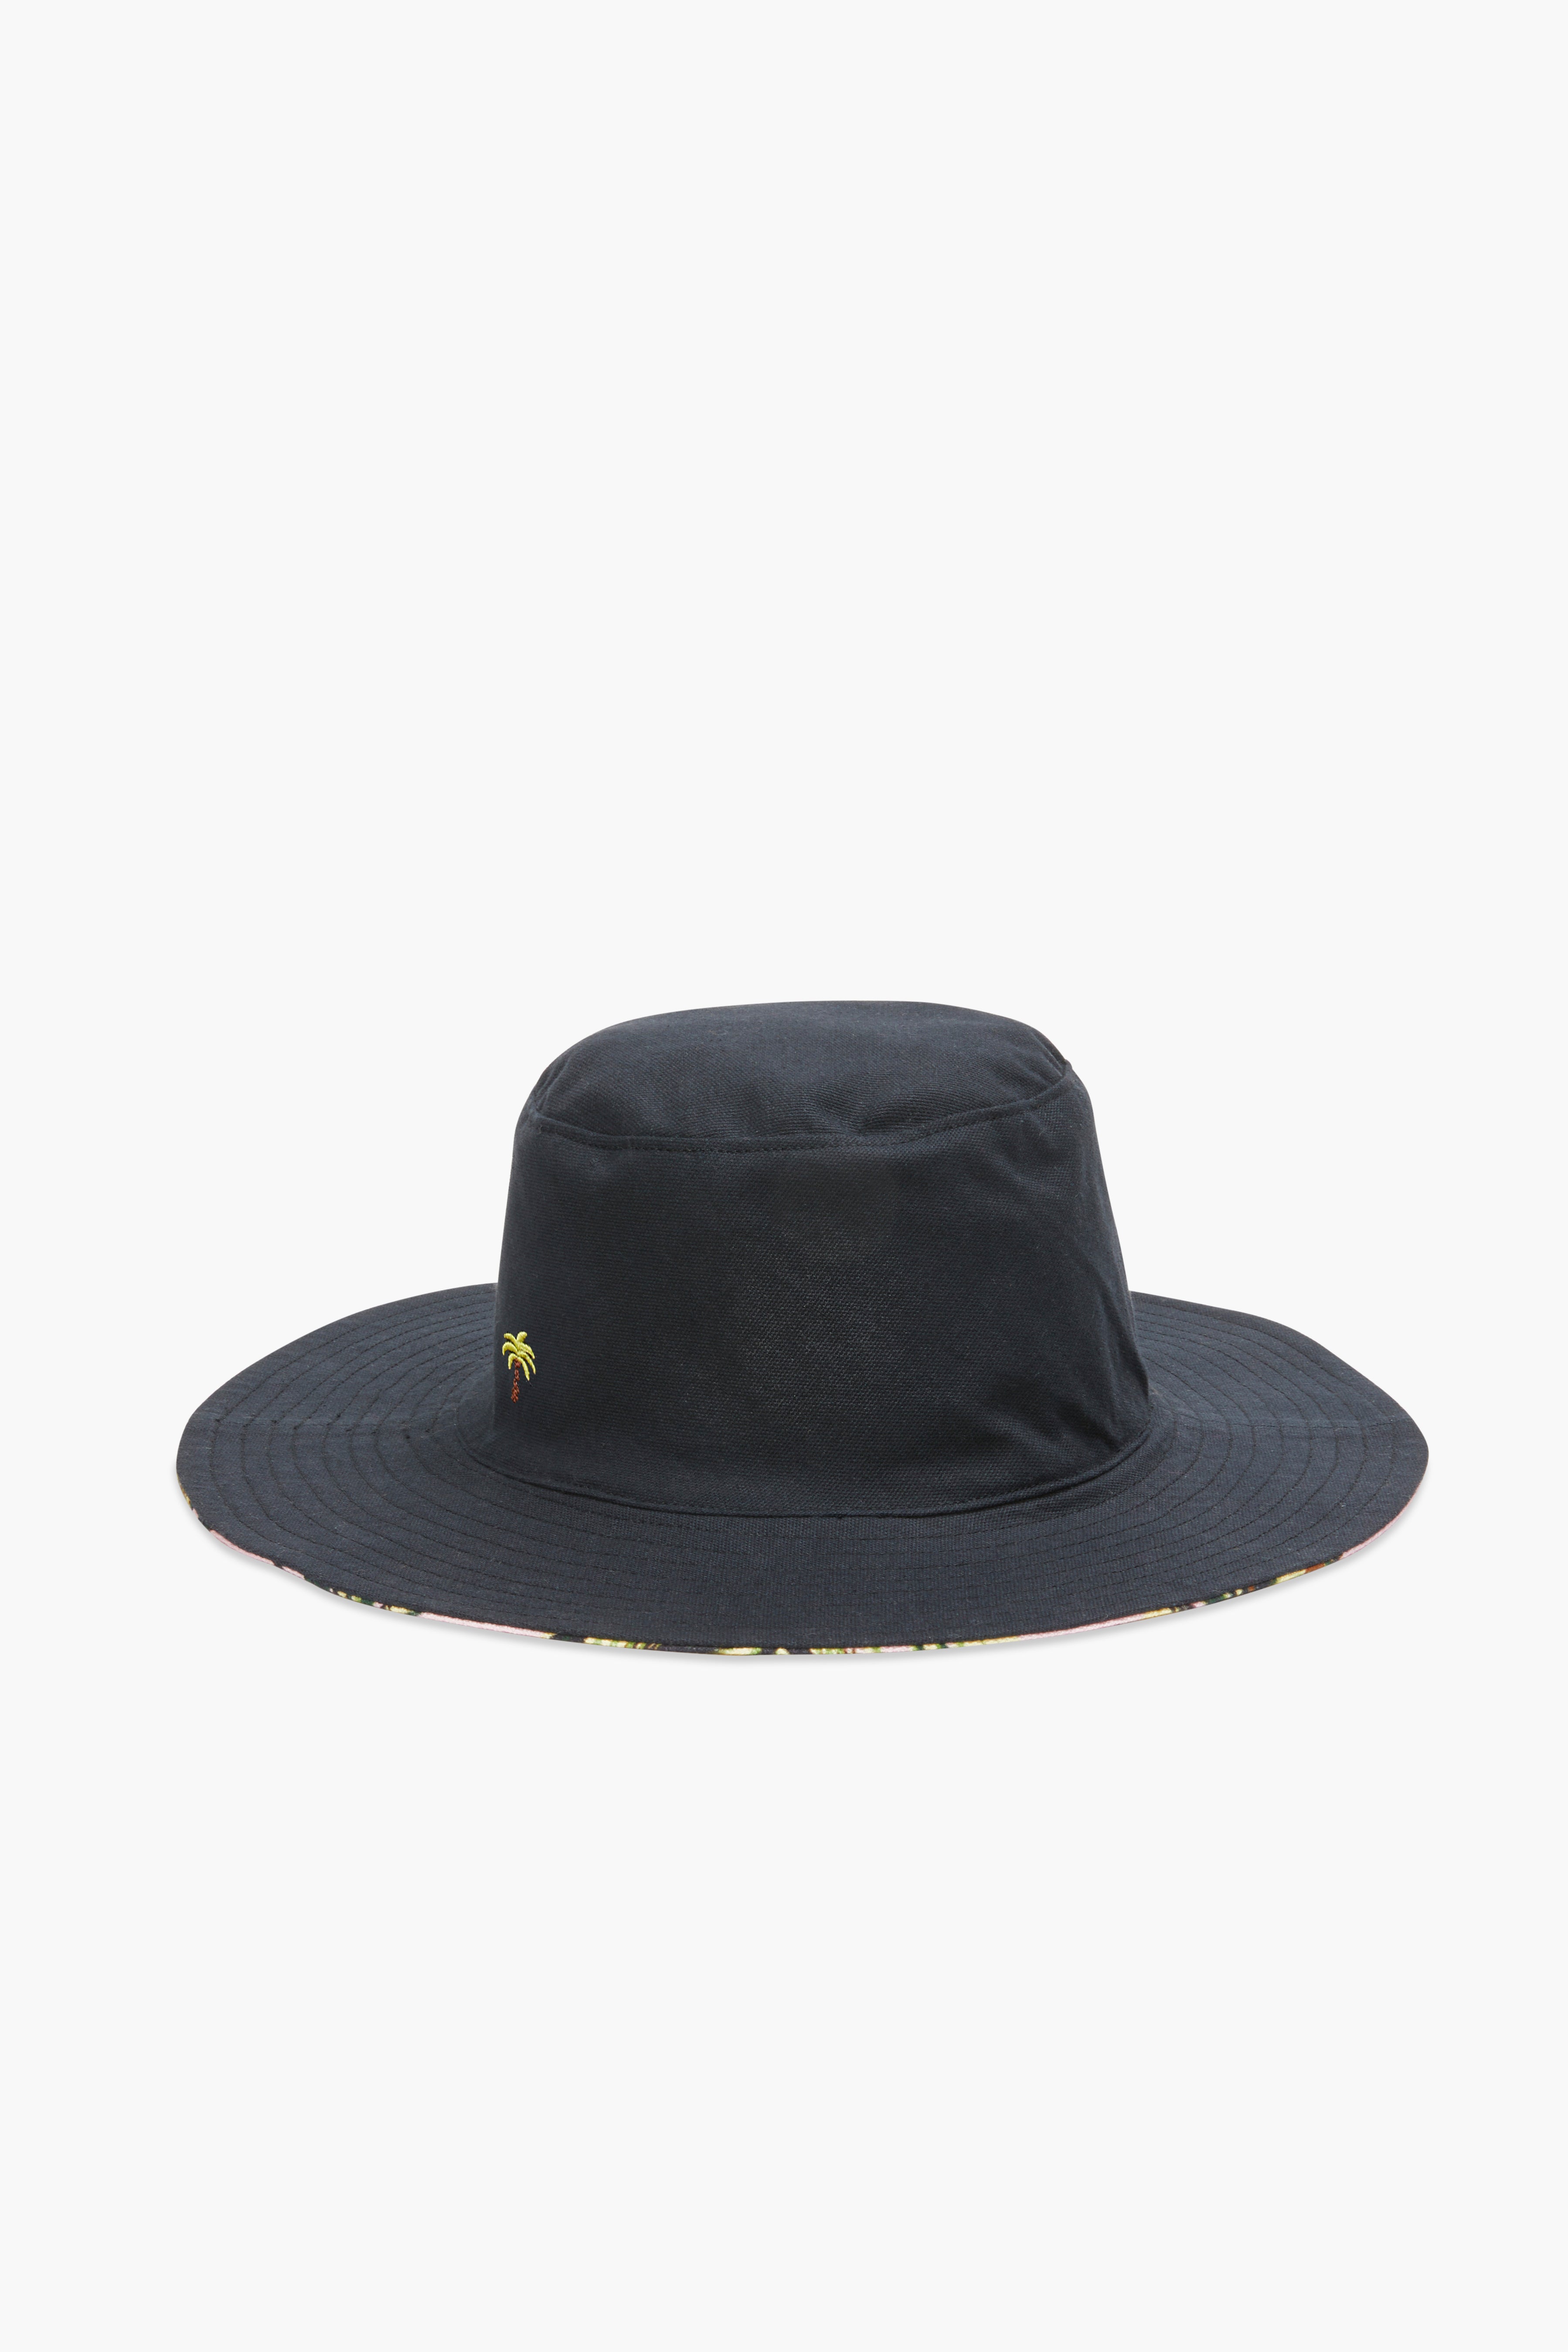 The Reversible Bucket Hat